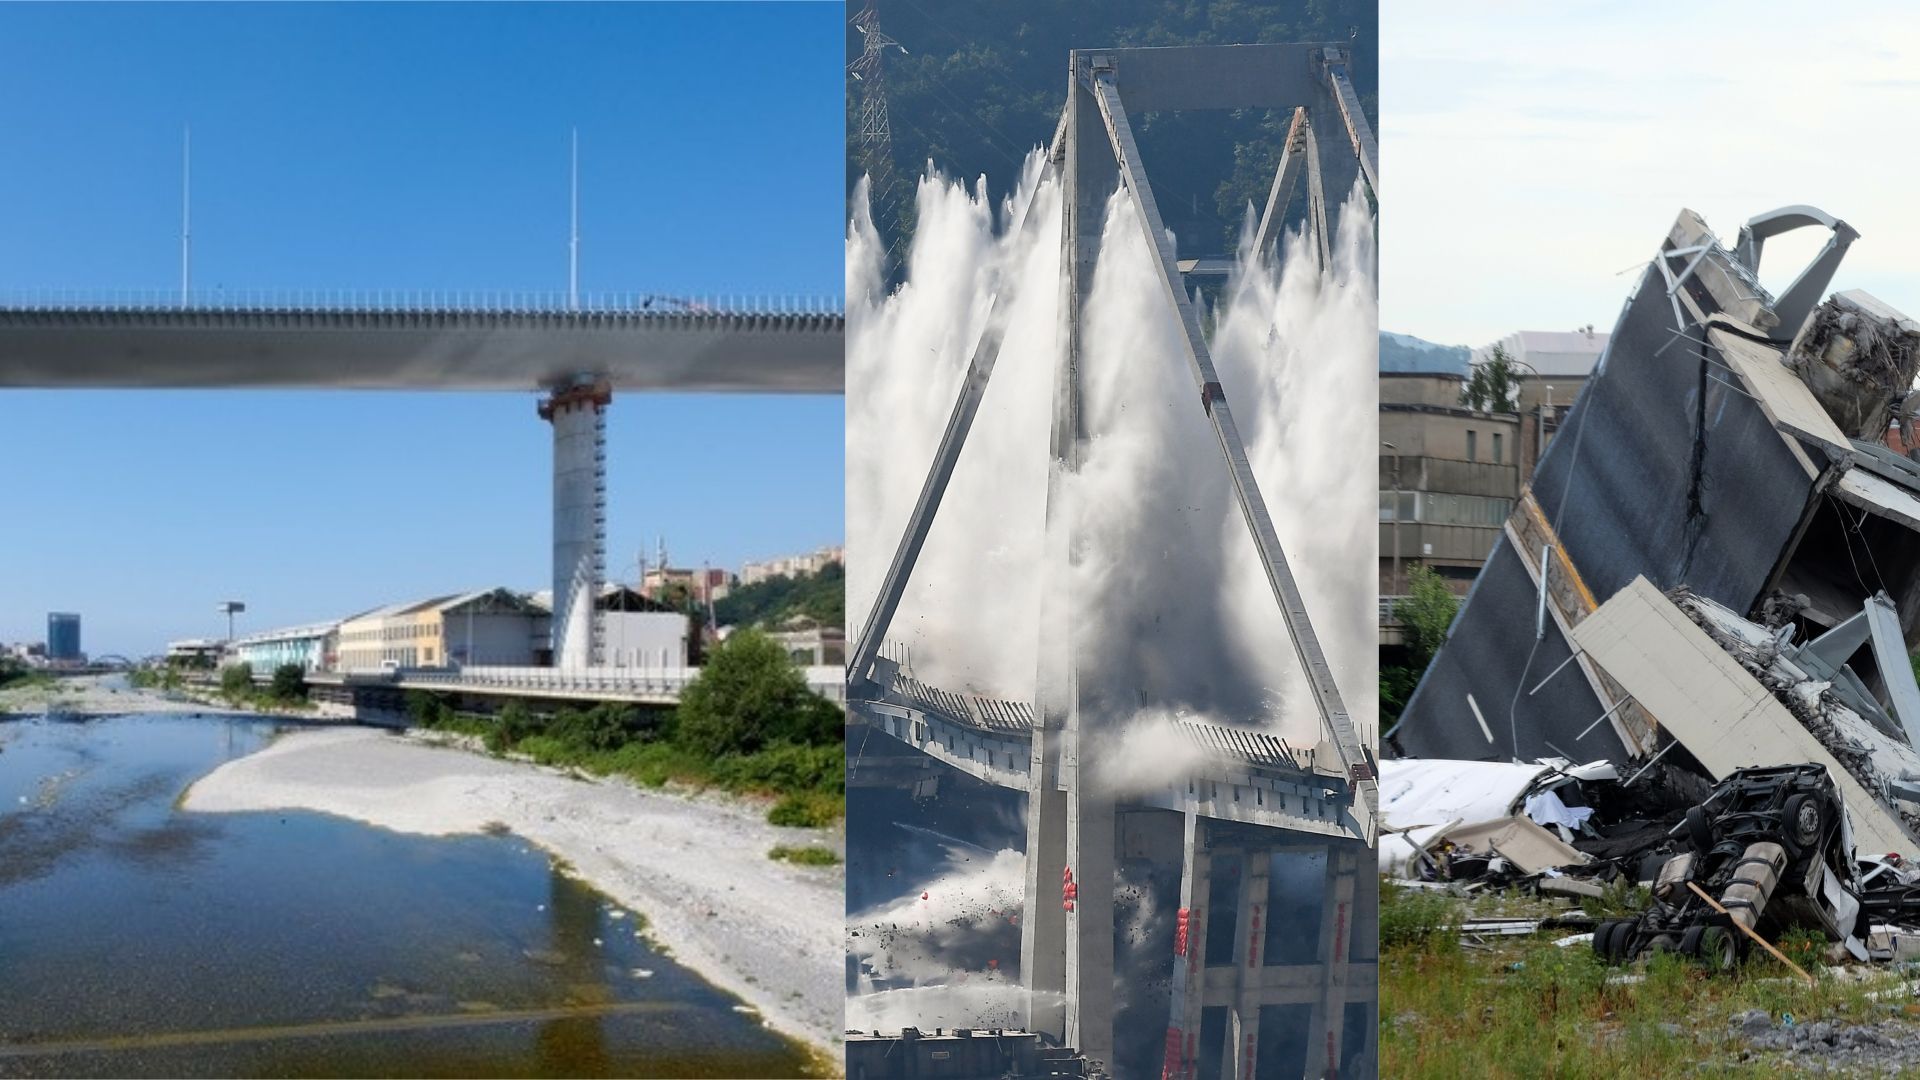 De gauche à droite : le nouveau pont de Gènes ; la démolition le 28 juin 2019 d’une partie restante de l’ancien pont Morandi ; des débris après l’effondrement d’une partie de l’ouvrage le 14 août 2018.